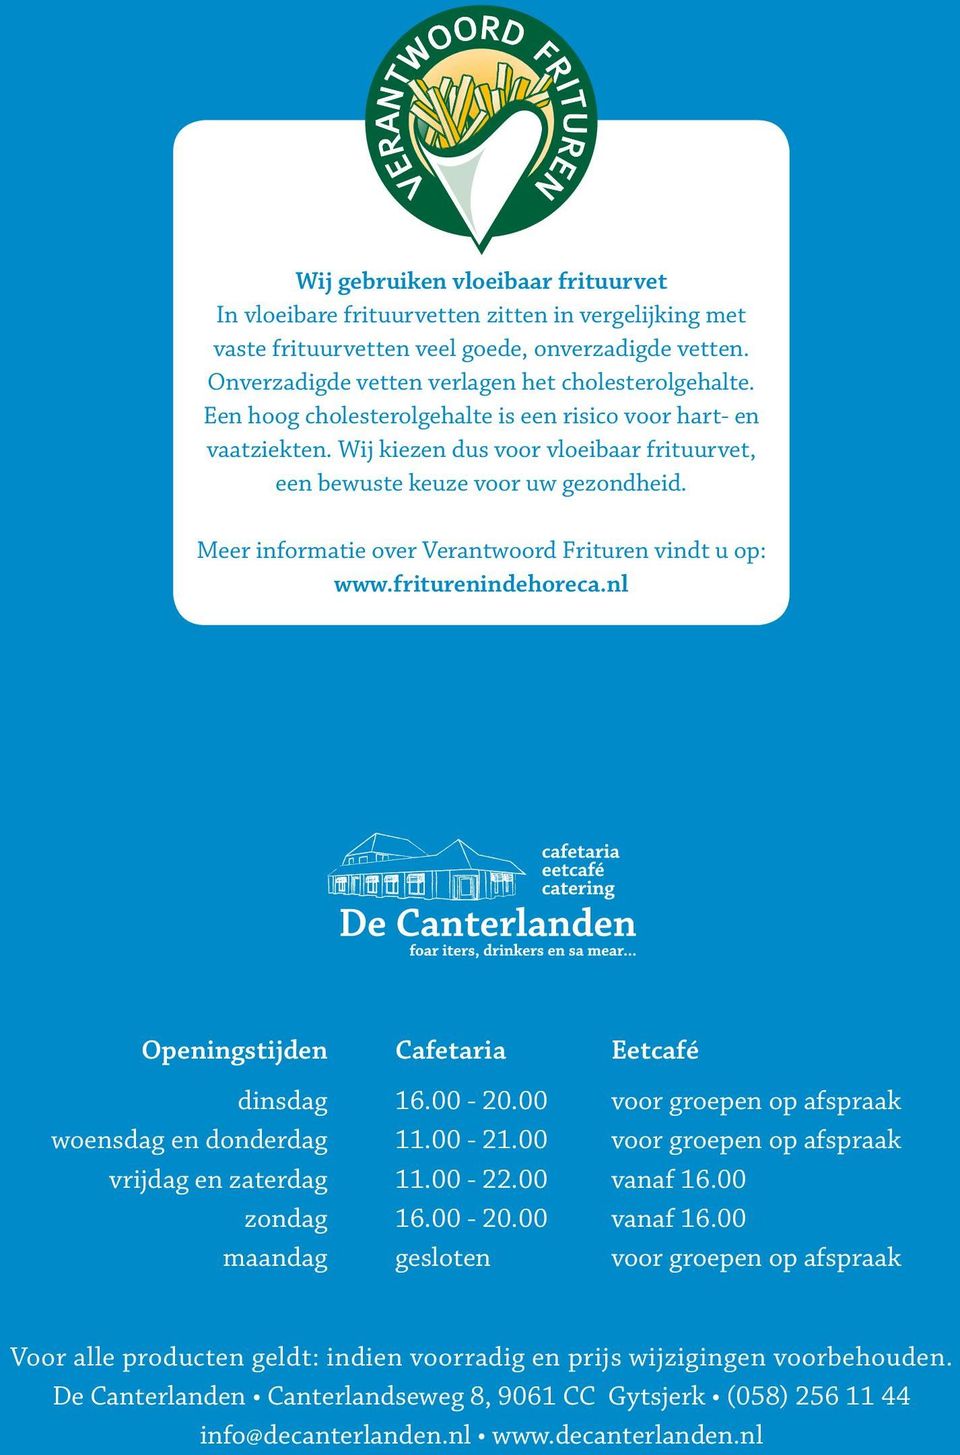 Meer informatie over Verantwoord Frituren vindt u op: www.friturenindehoreca.nl Openingstijden Cafetaria Eetcafé dinsdag 16.00-20.00 voor groepen op afspraak woensdag en donderdag 11.00-21.